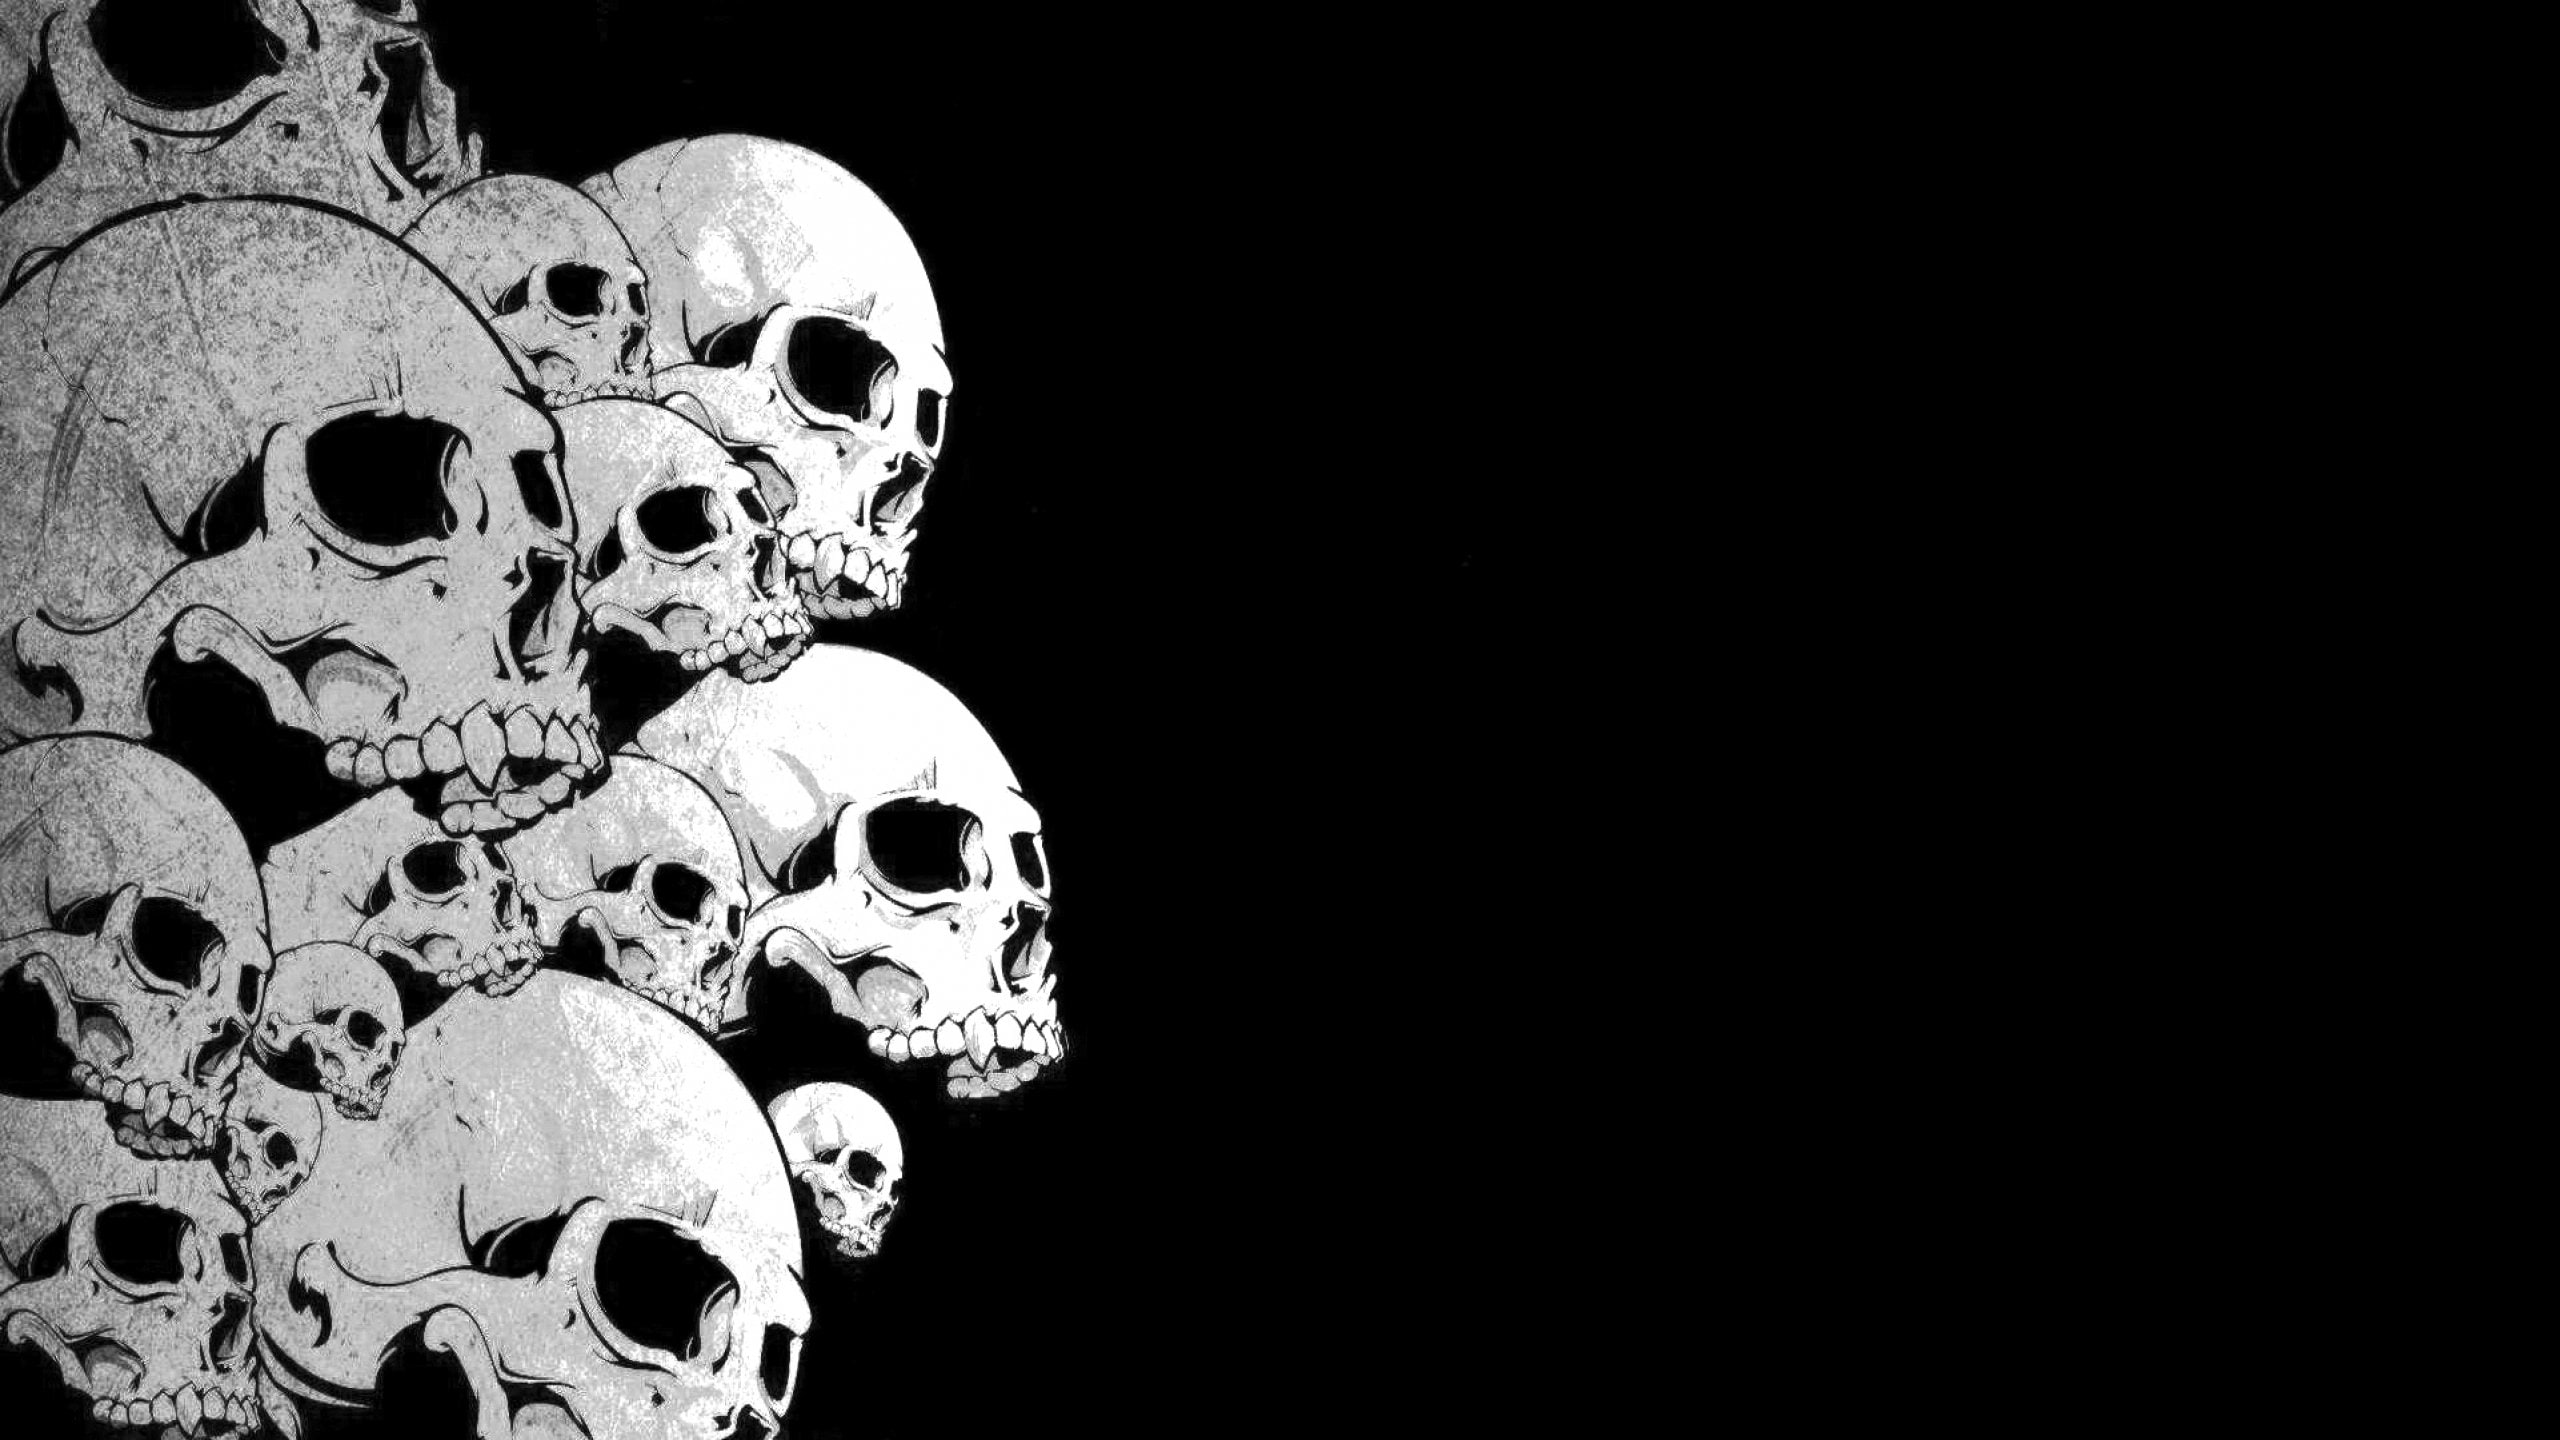 art, artwork, Dark, Evil, horror, skeleton, skull, skulls